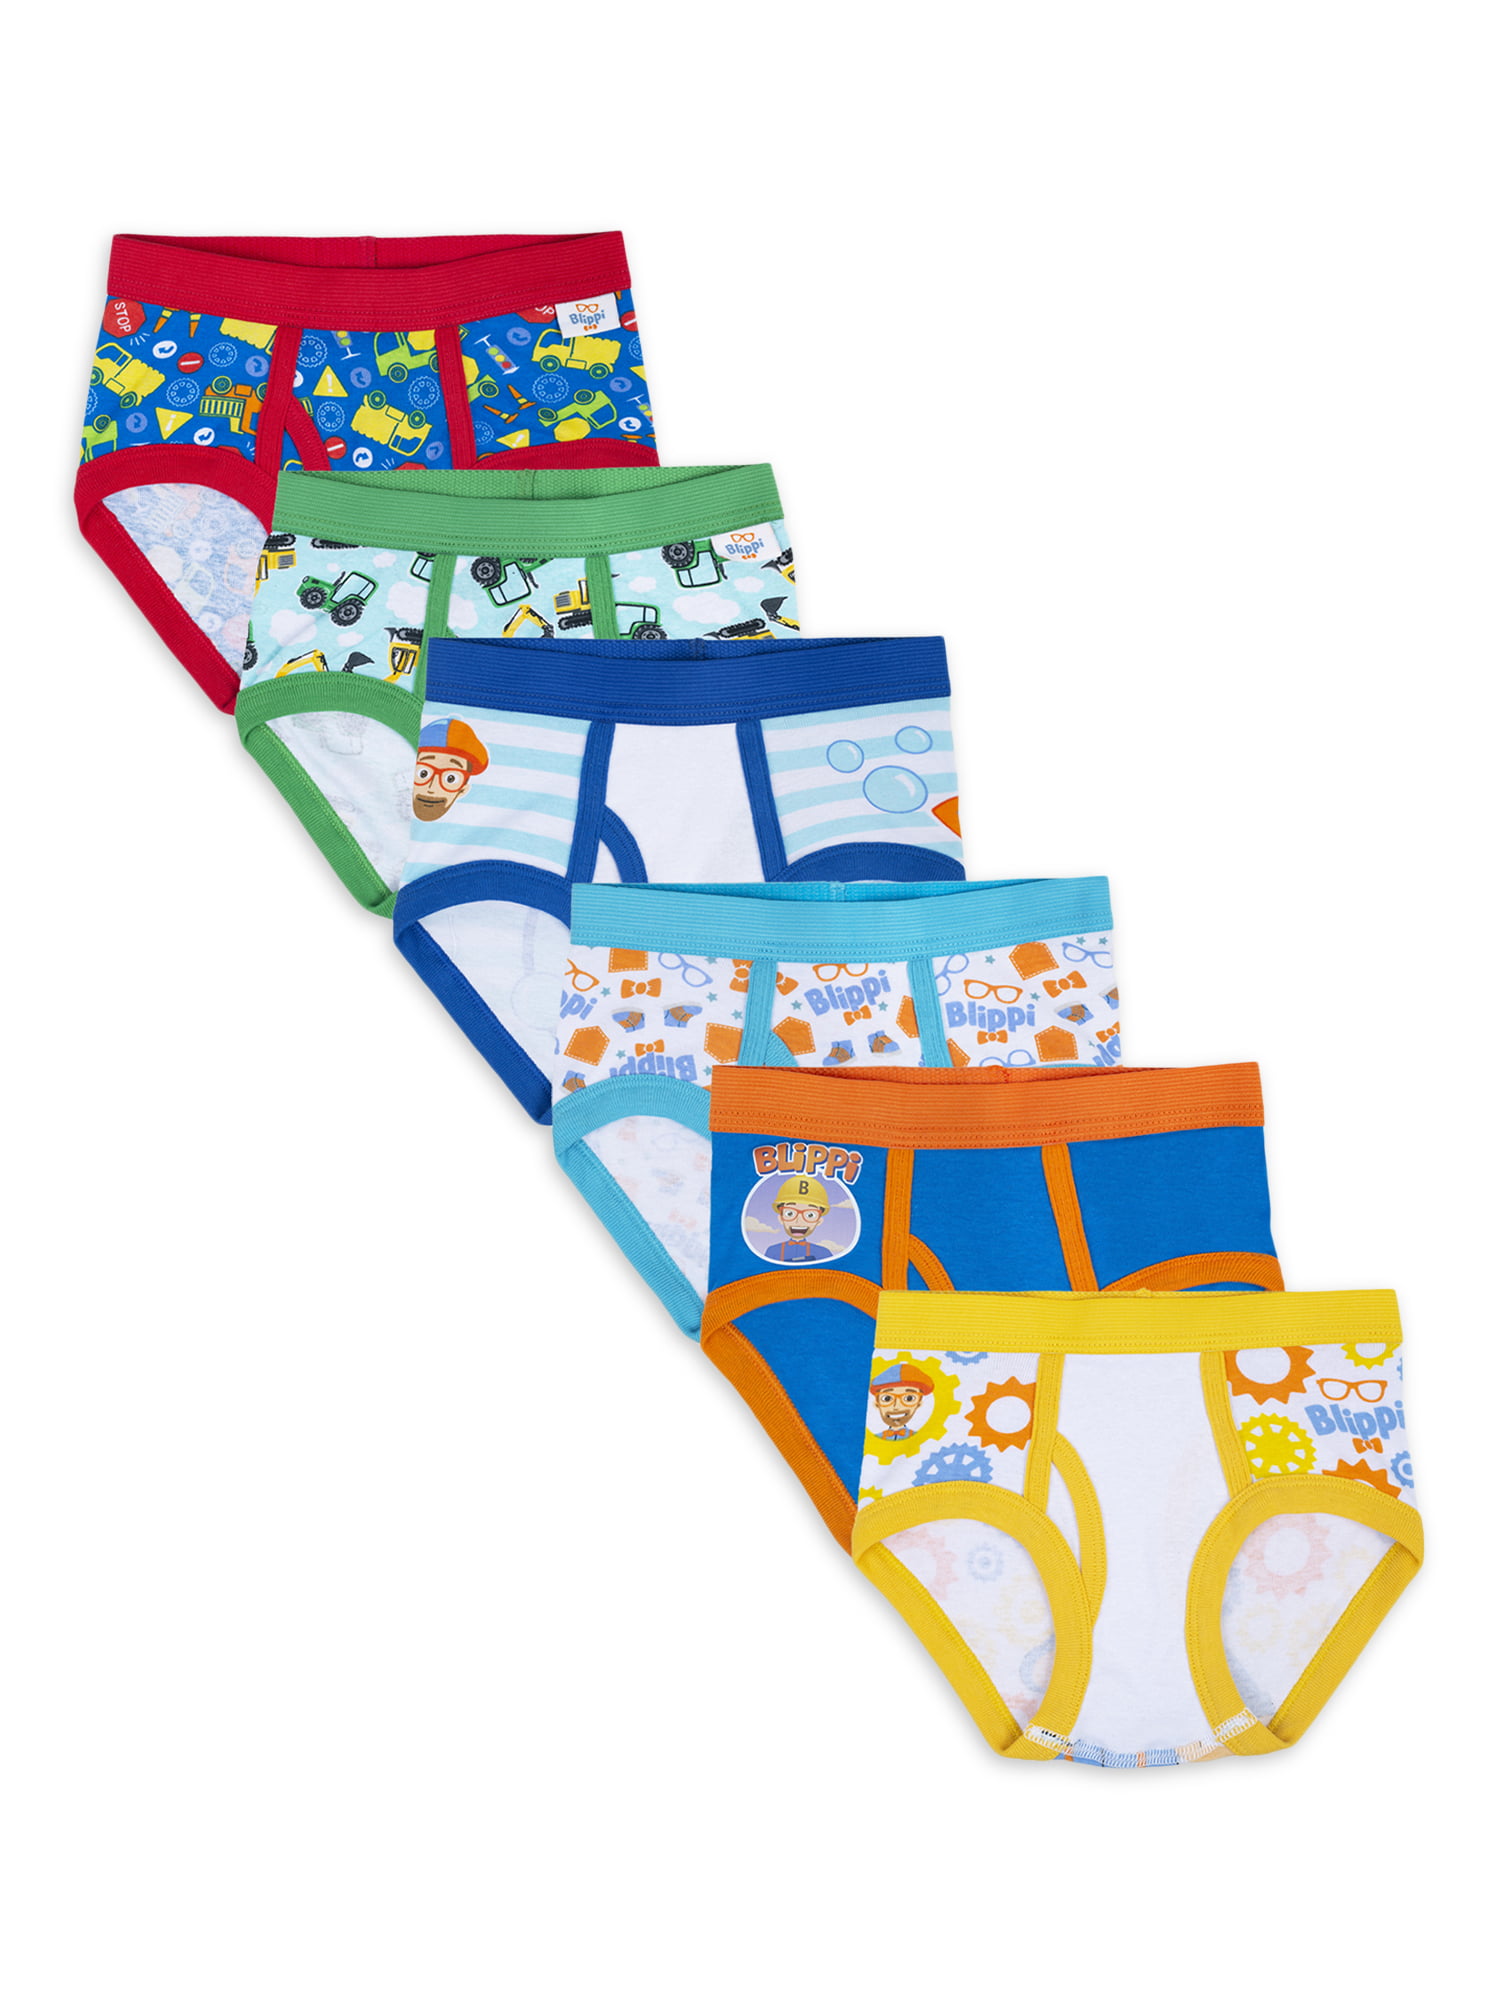 Blippi Toddler Boys Brief Underwear, 6-Pack, 2T-4T - Walmart.com